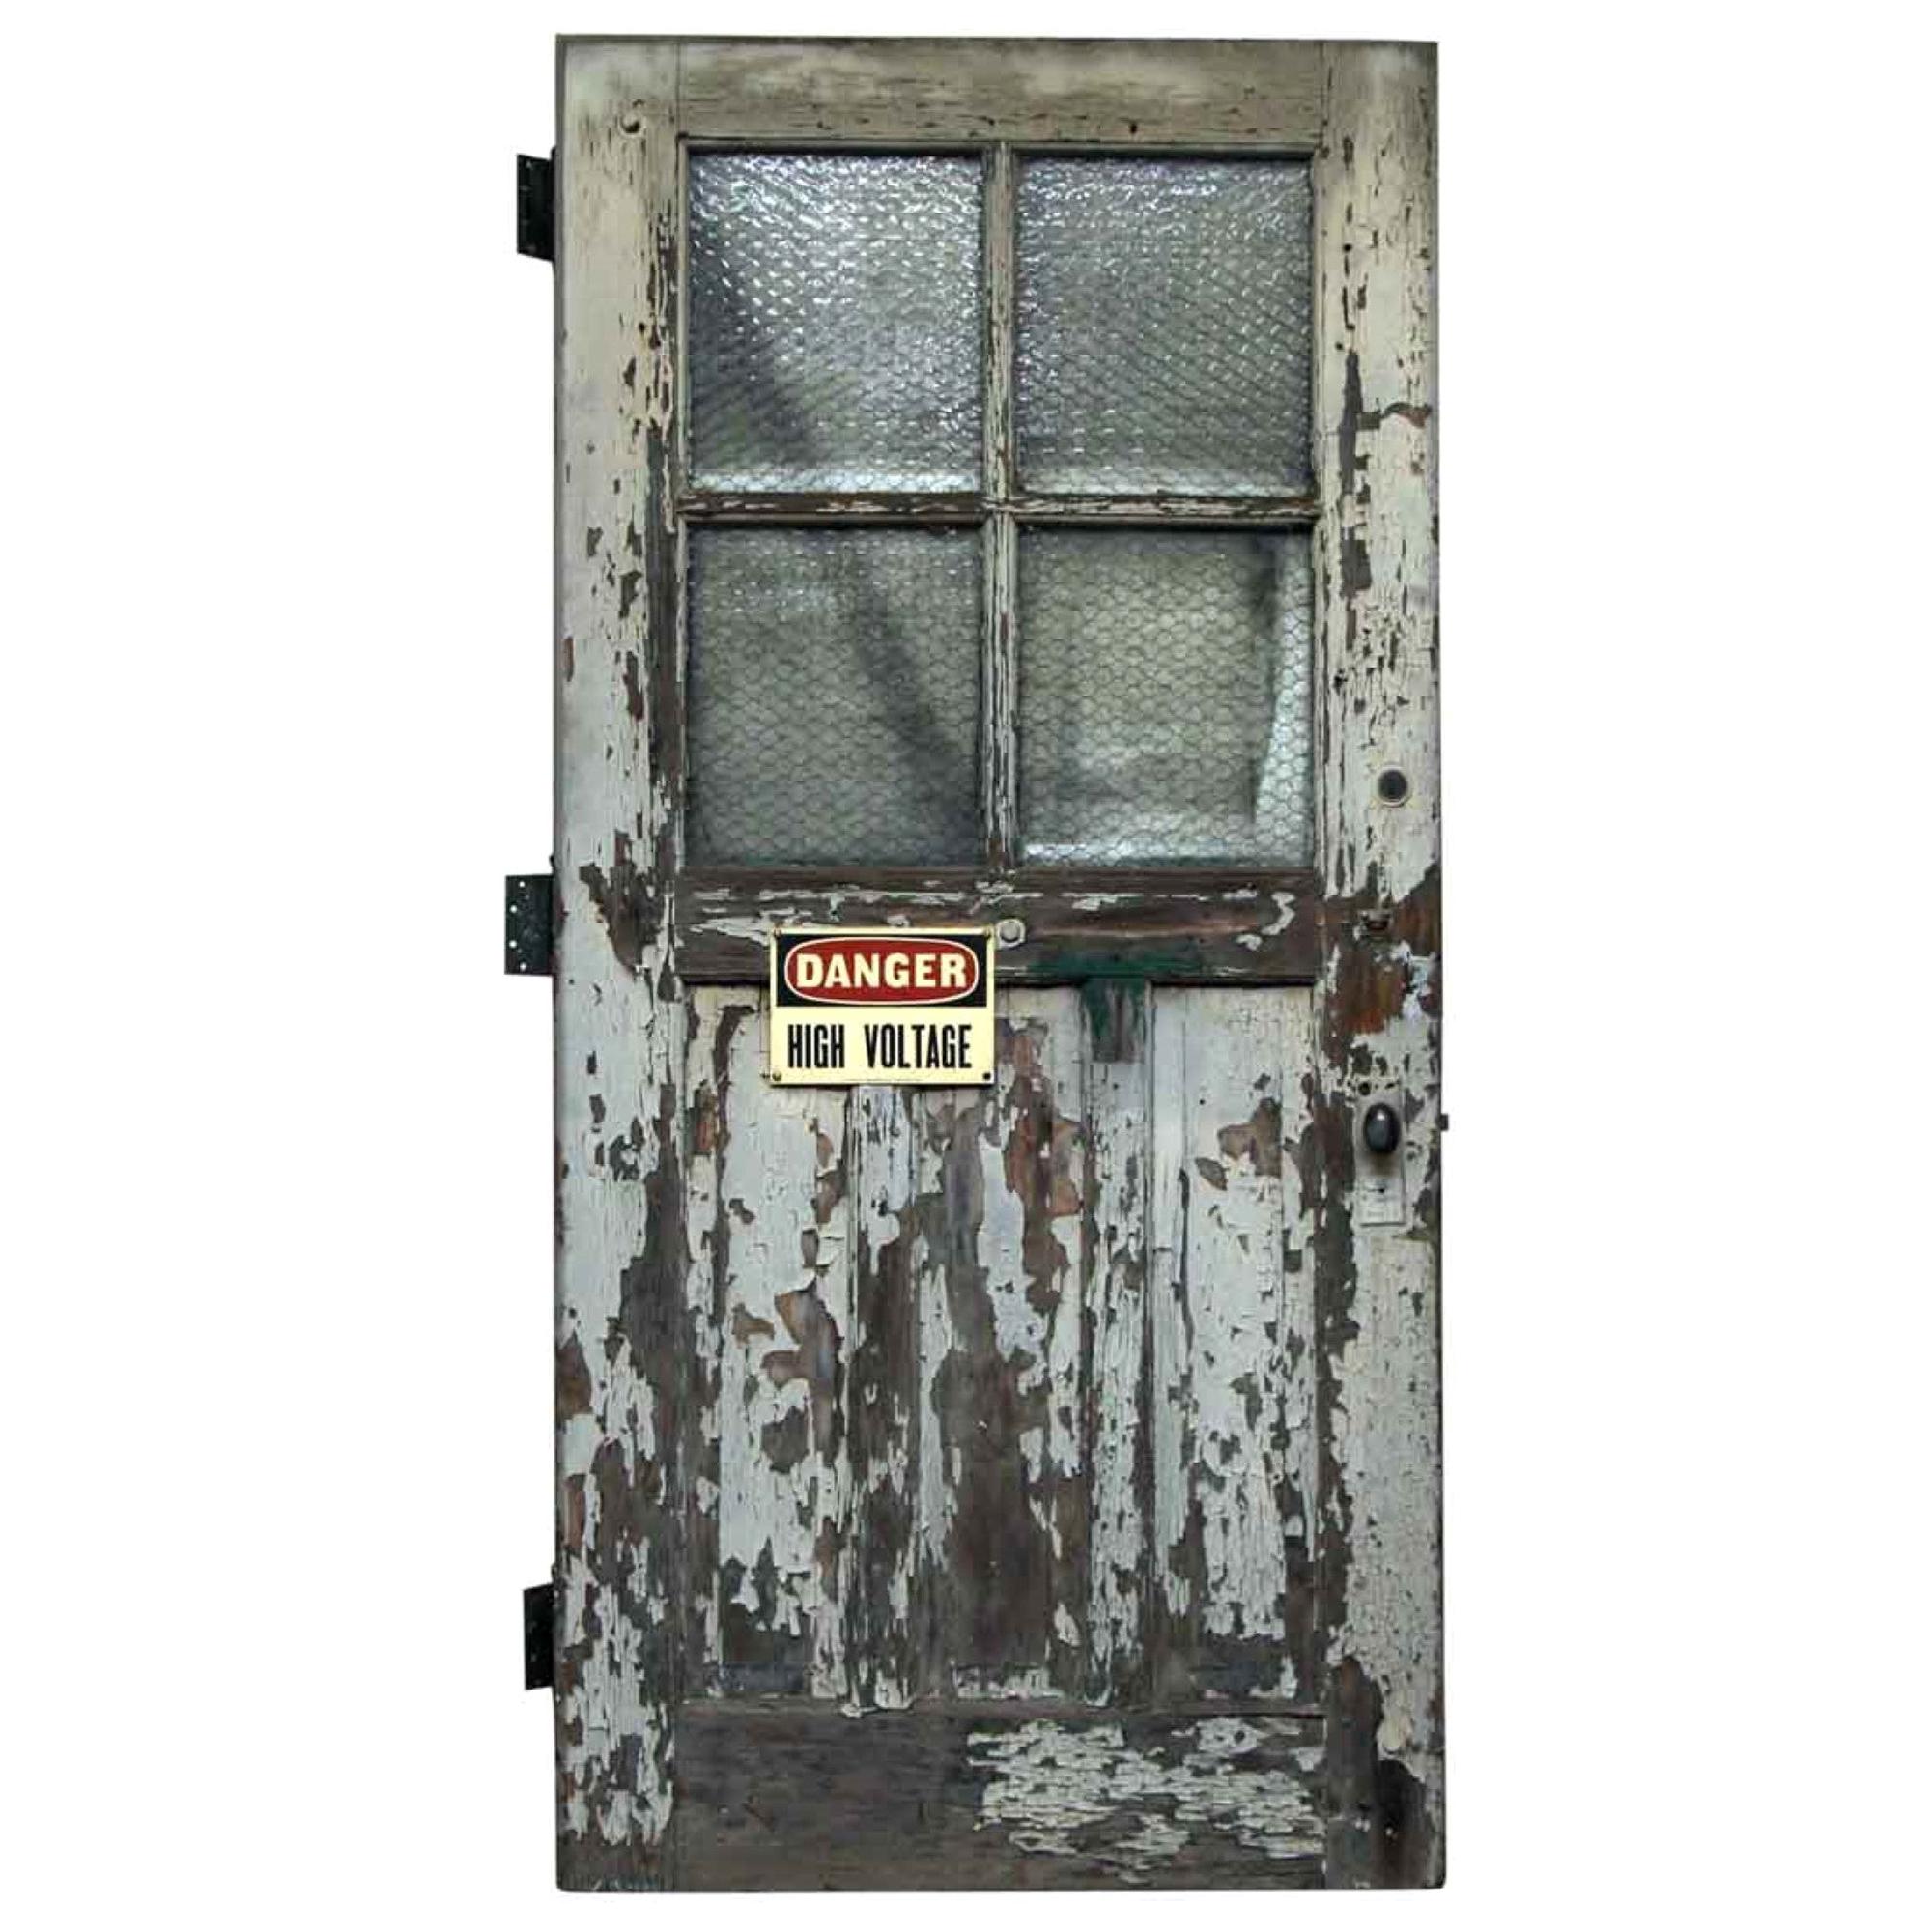 1920s Antique Industrial Wood Door with Chicken Wire Glass Panels